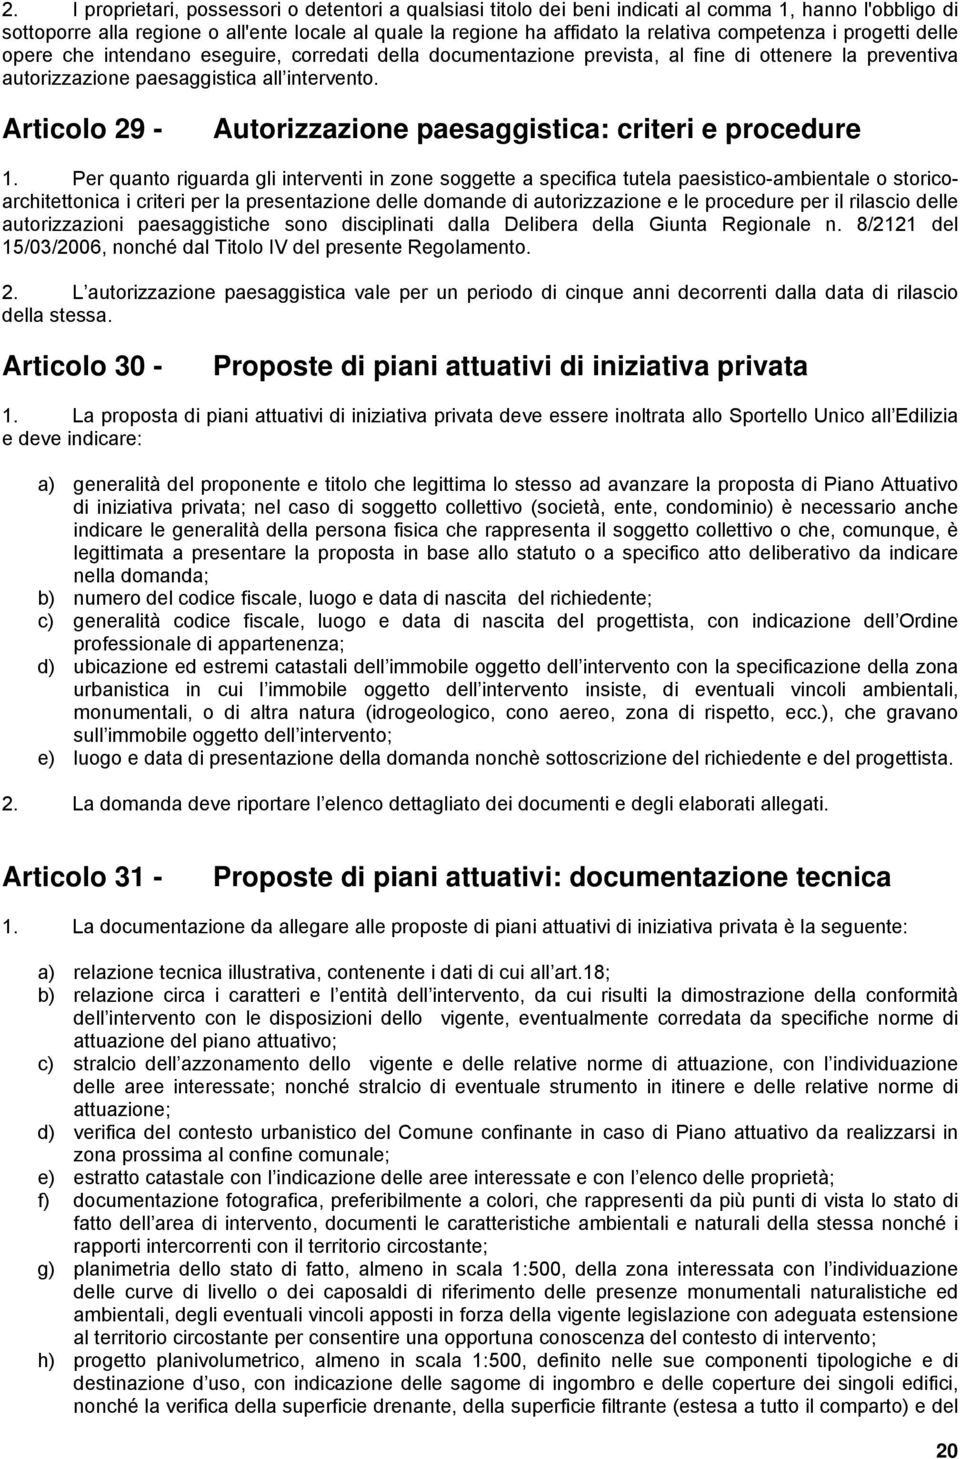 Articolo 29 - Autorizzazione paesaggistica: criteri e procedure 1.